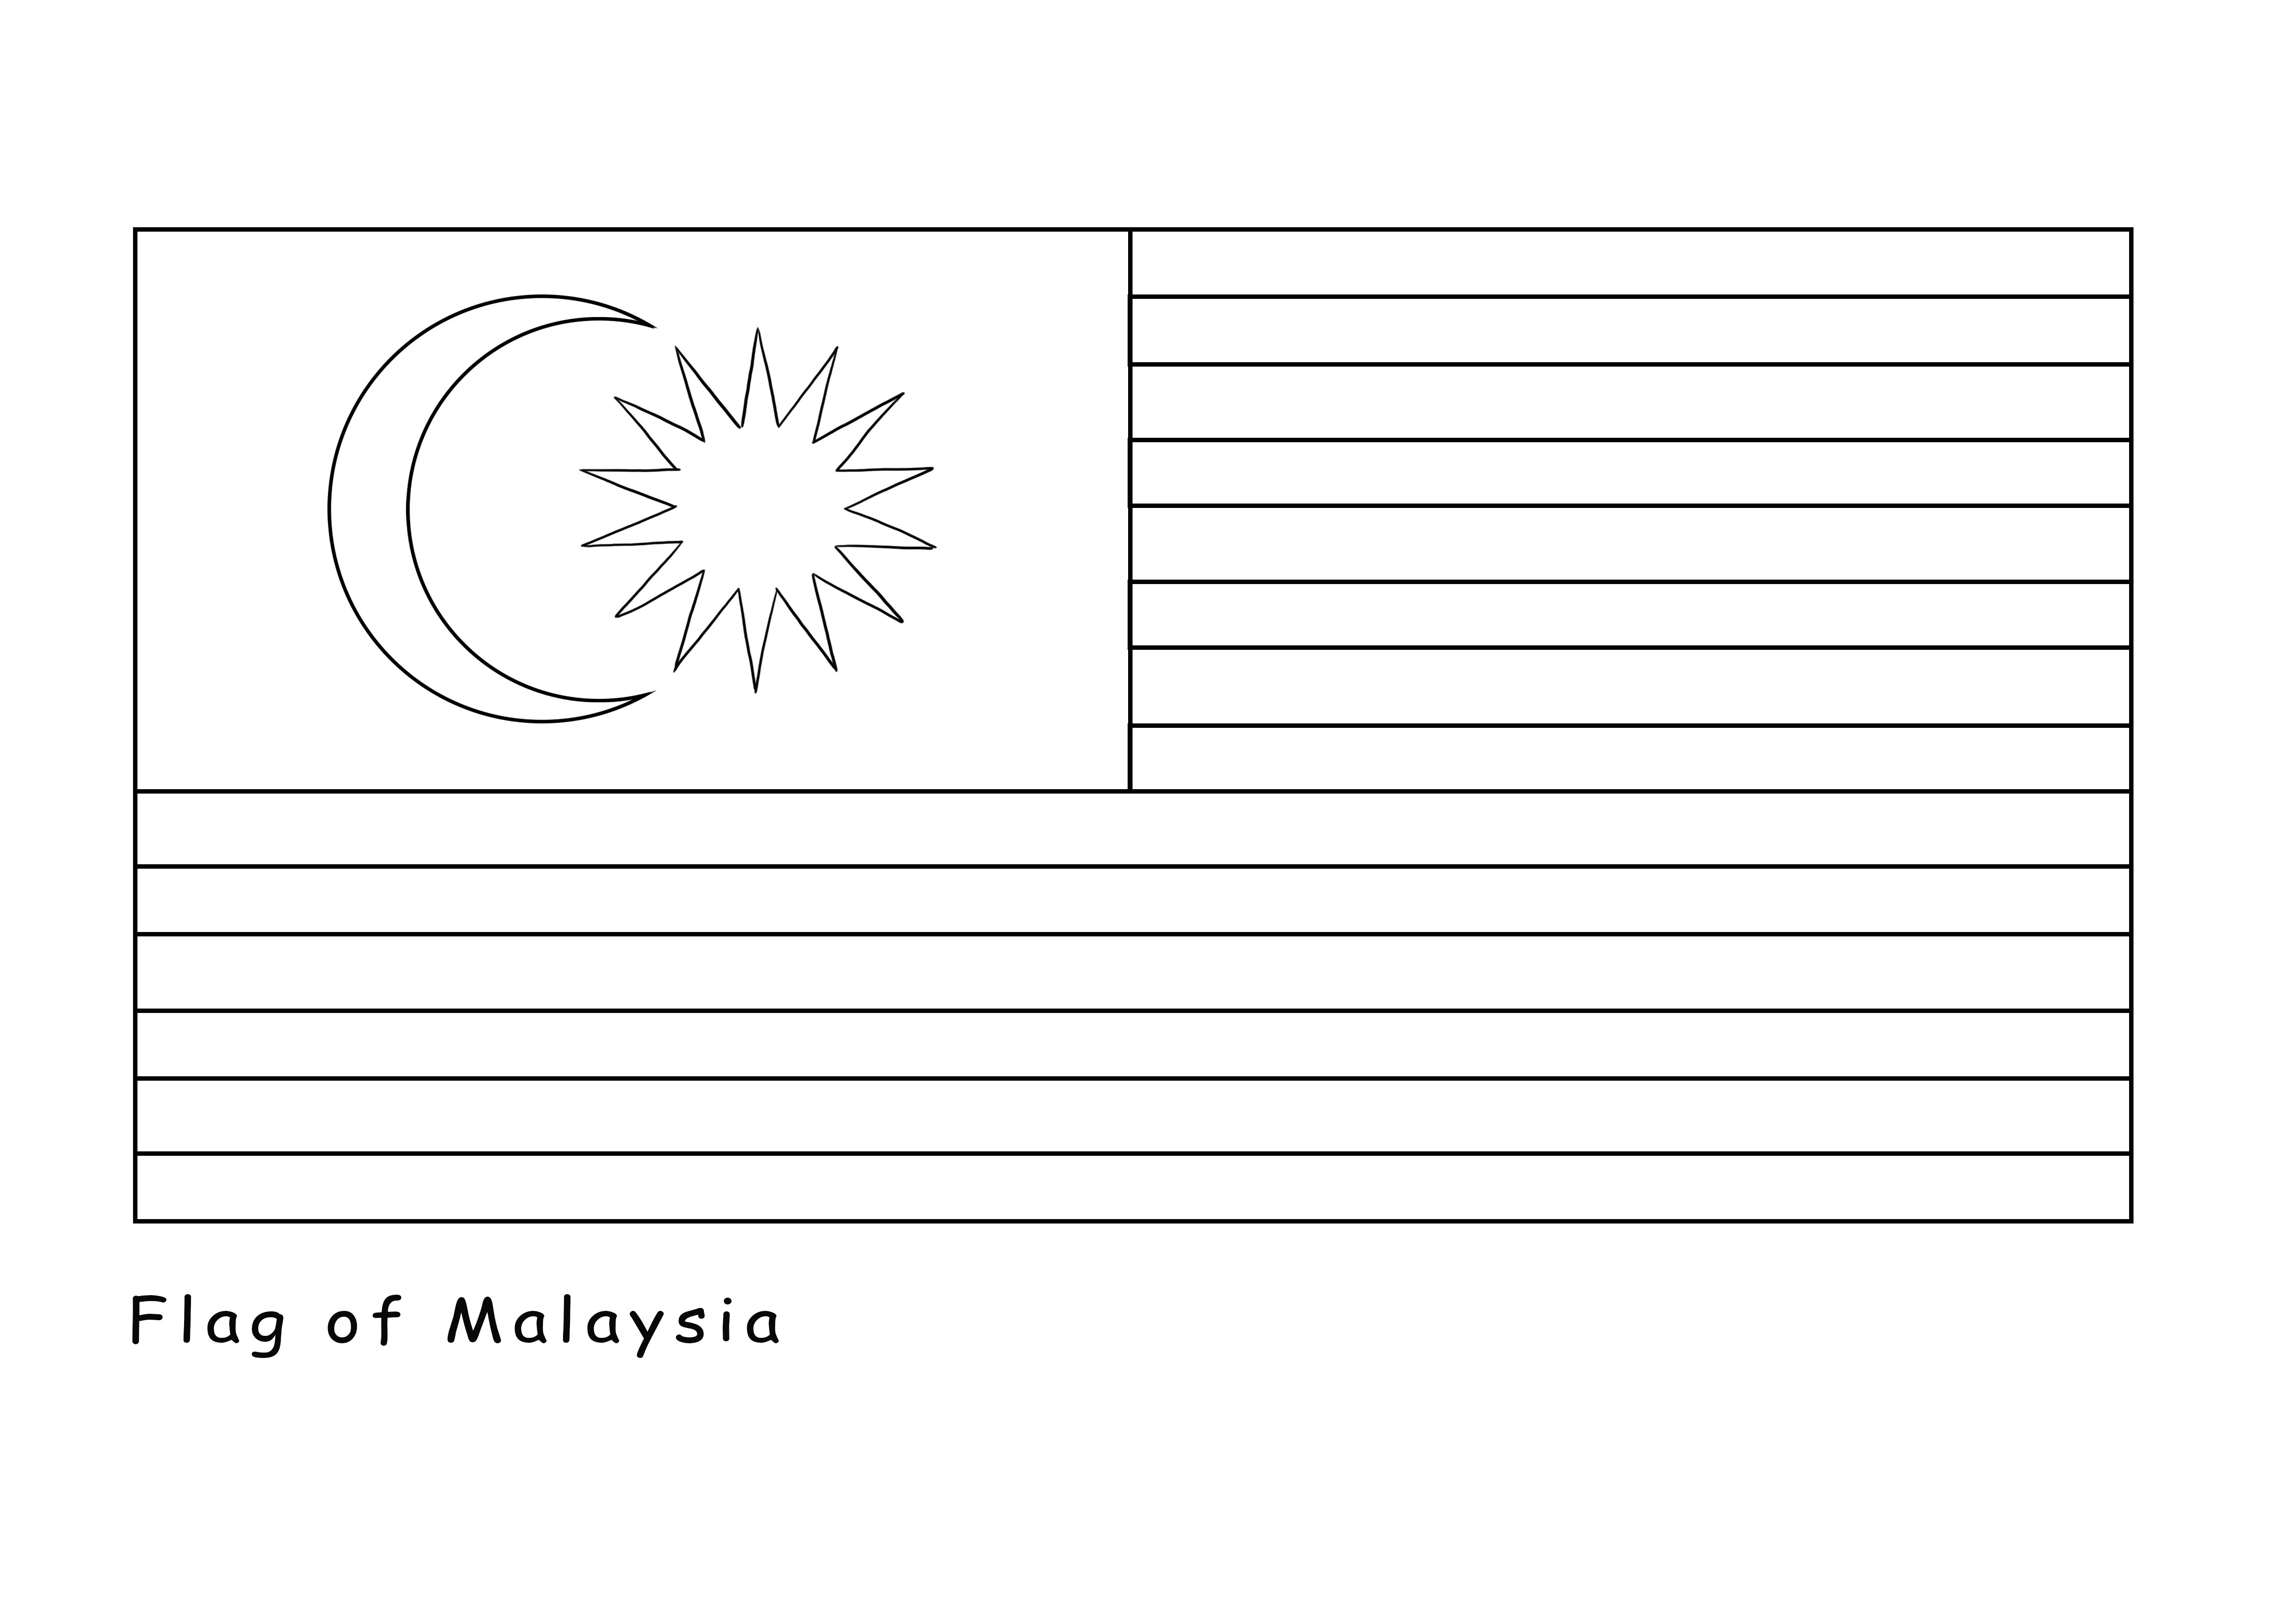 Impressão gratuita da Bandeira da Malásia é oferecida gratuitamente para ser colorida